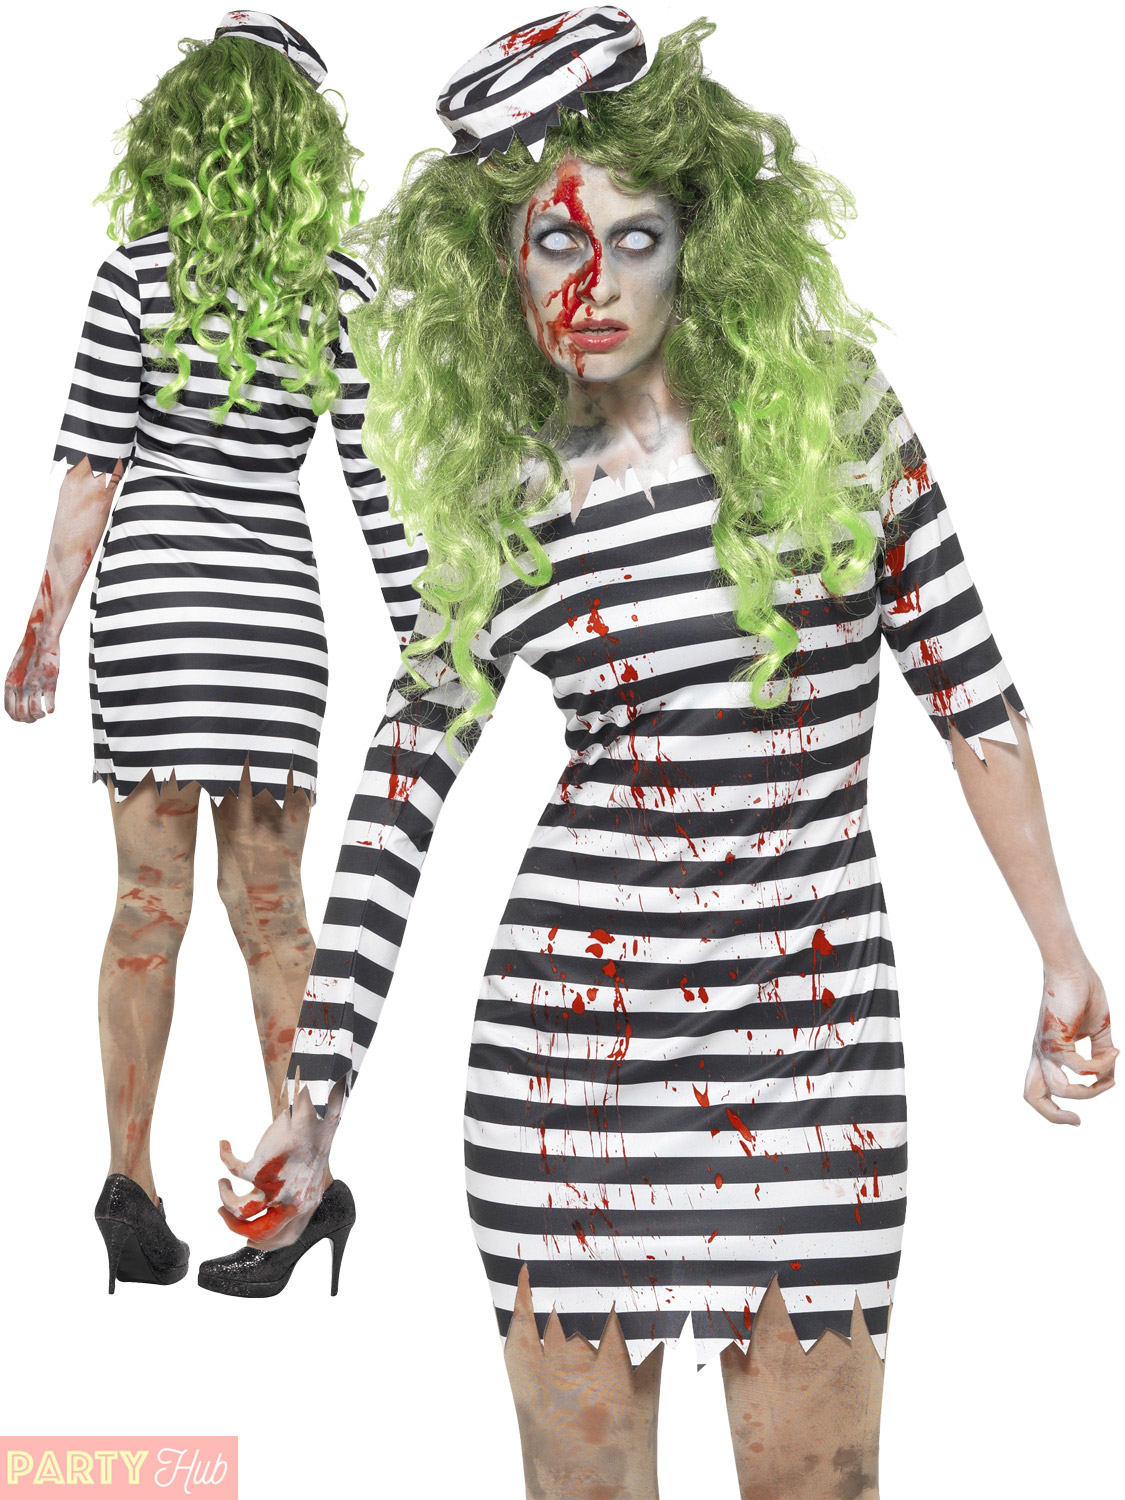 Ladies convict costume